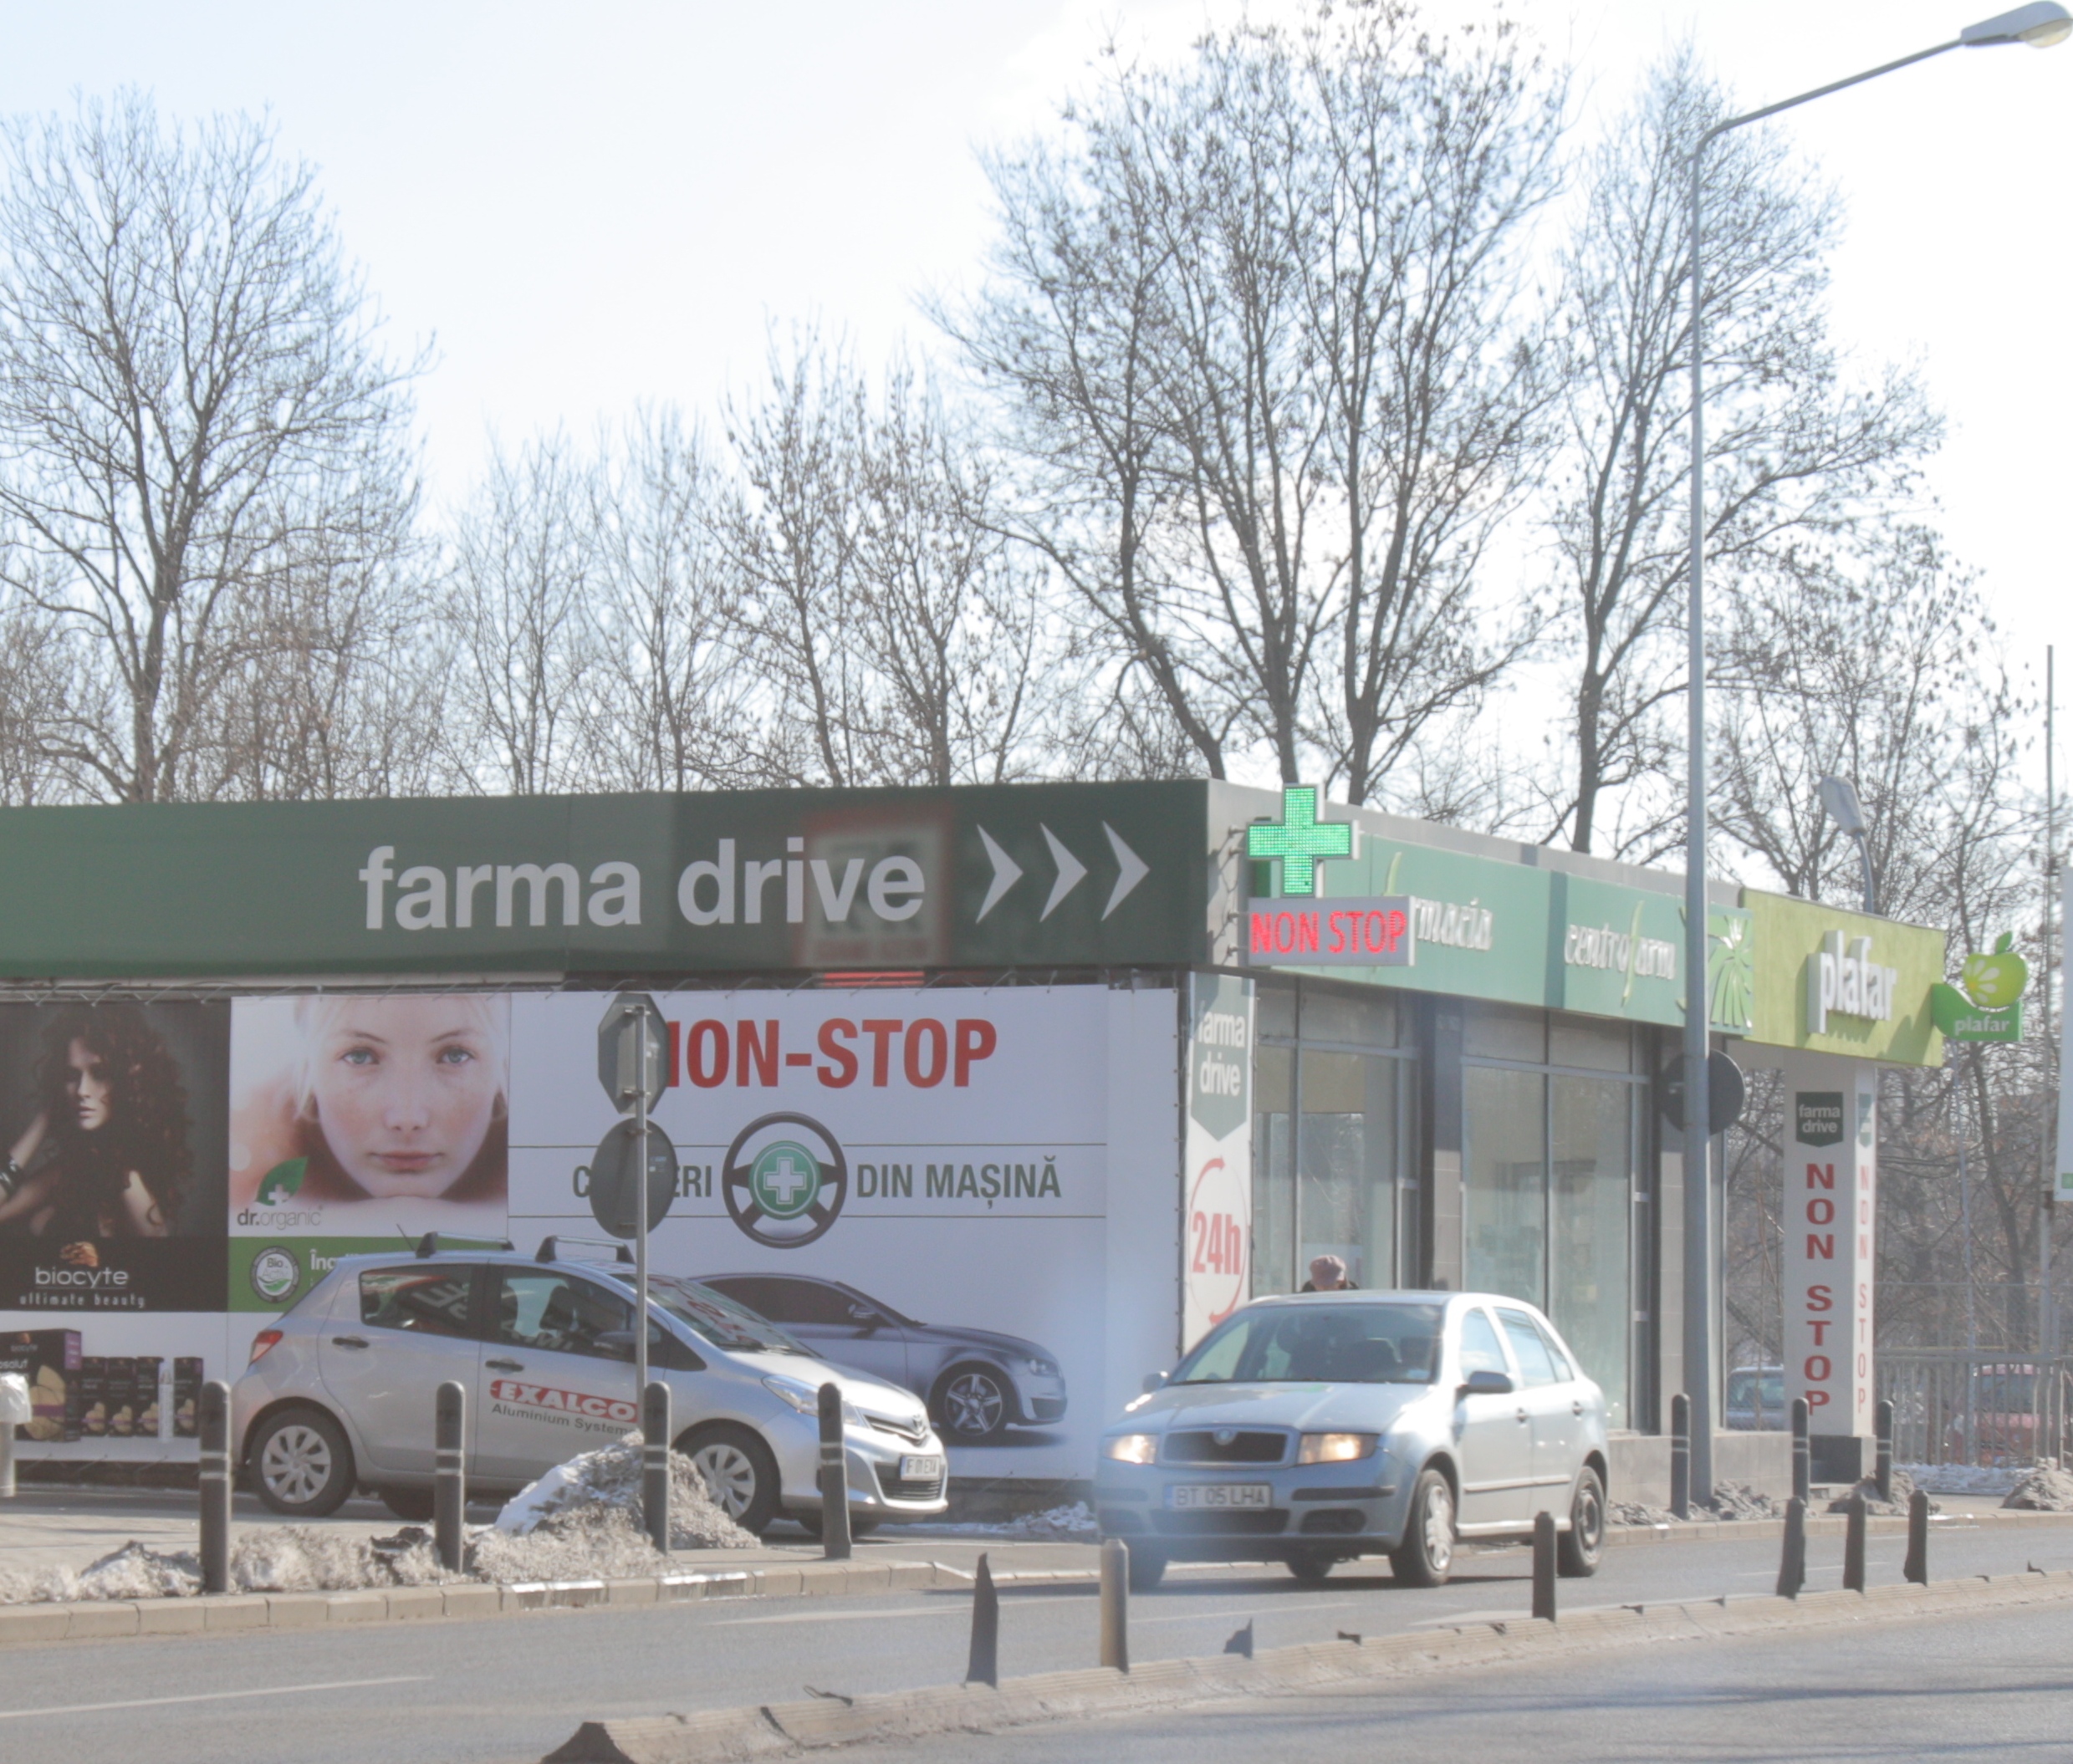 Farmacia cu drive-in este situata in zona Nordului din Capitala, la doi pasi de Parcul Herastrau